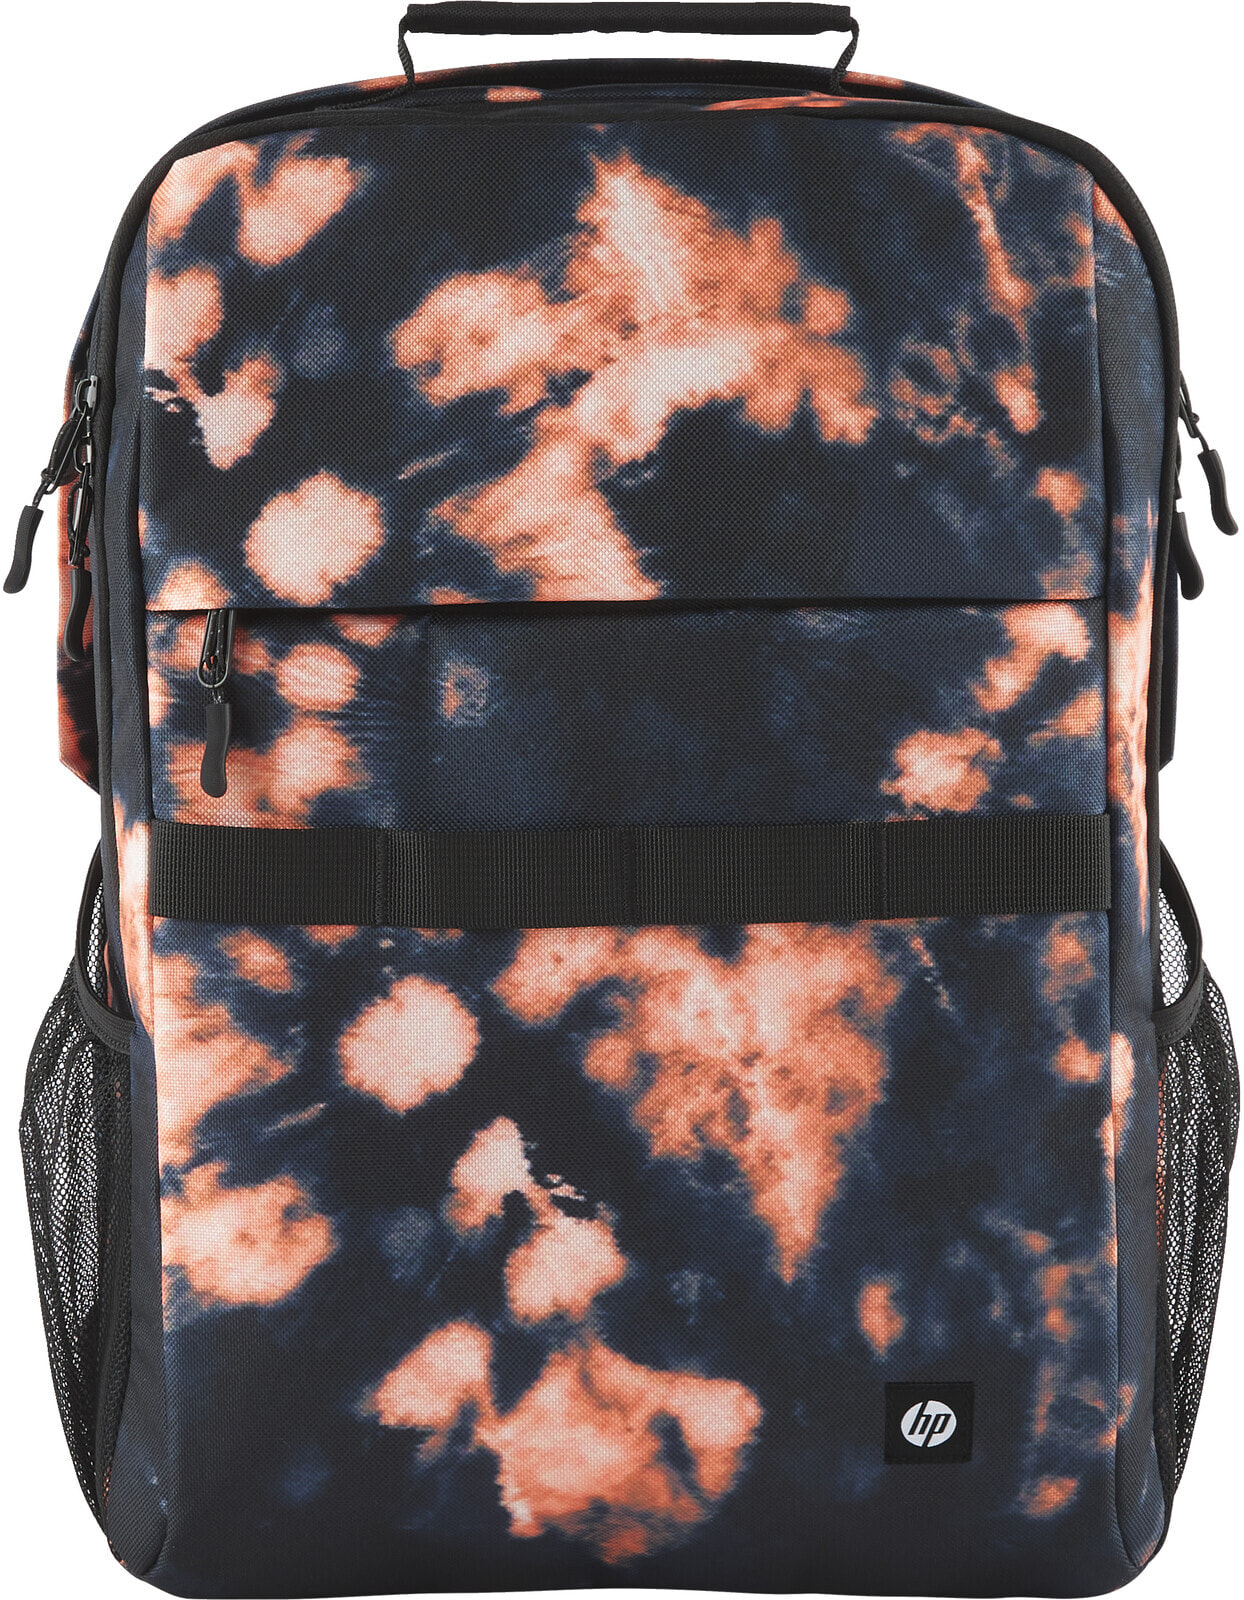 HP Campus XL Tie Dye Backpack - 40.9 cm (16.1